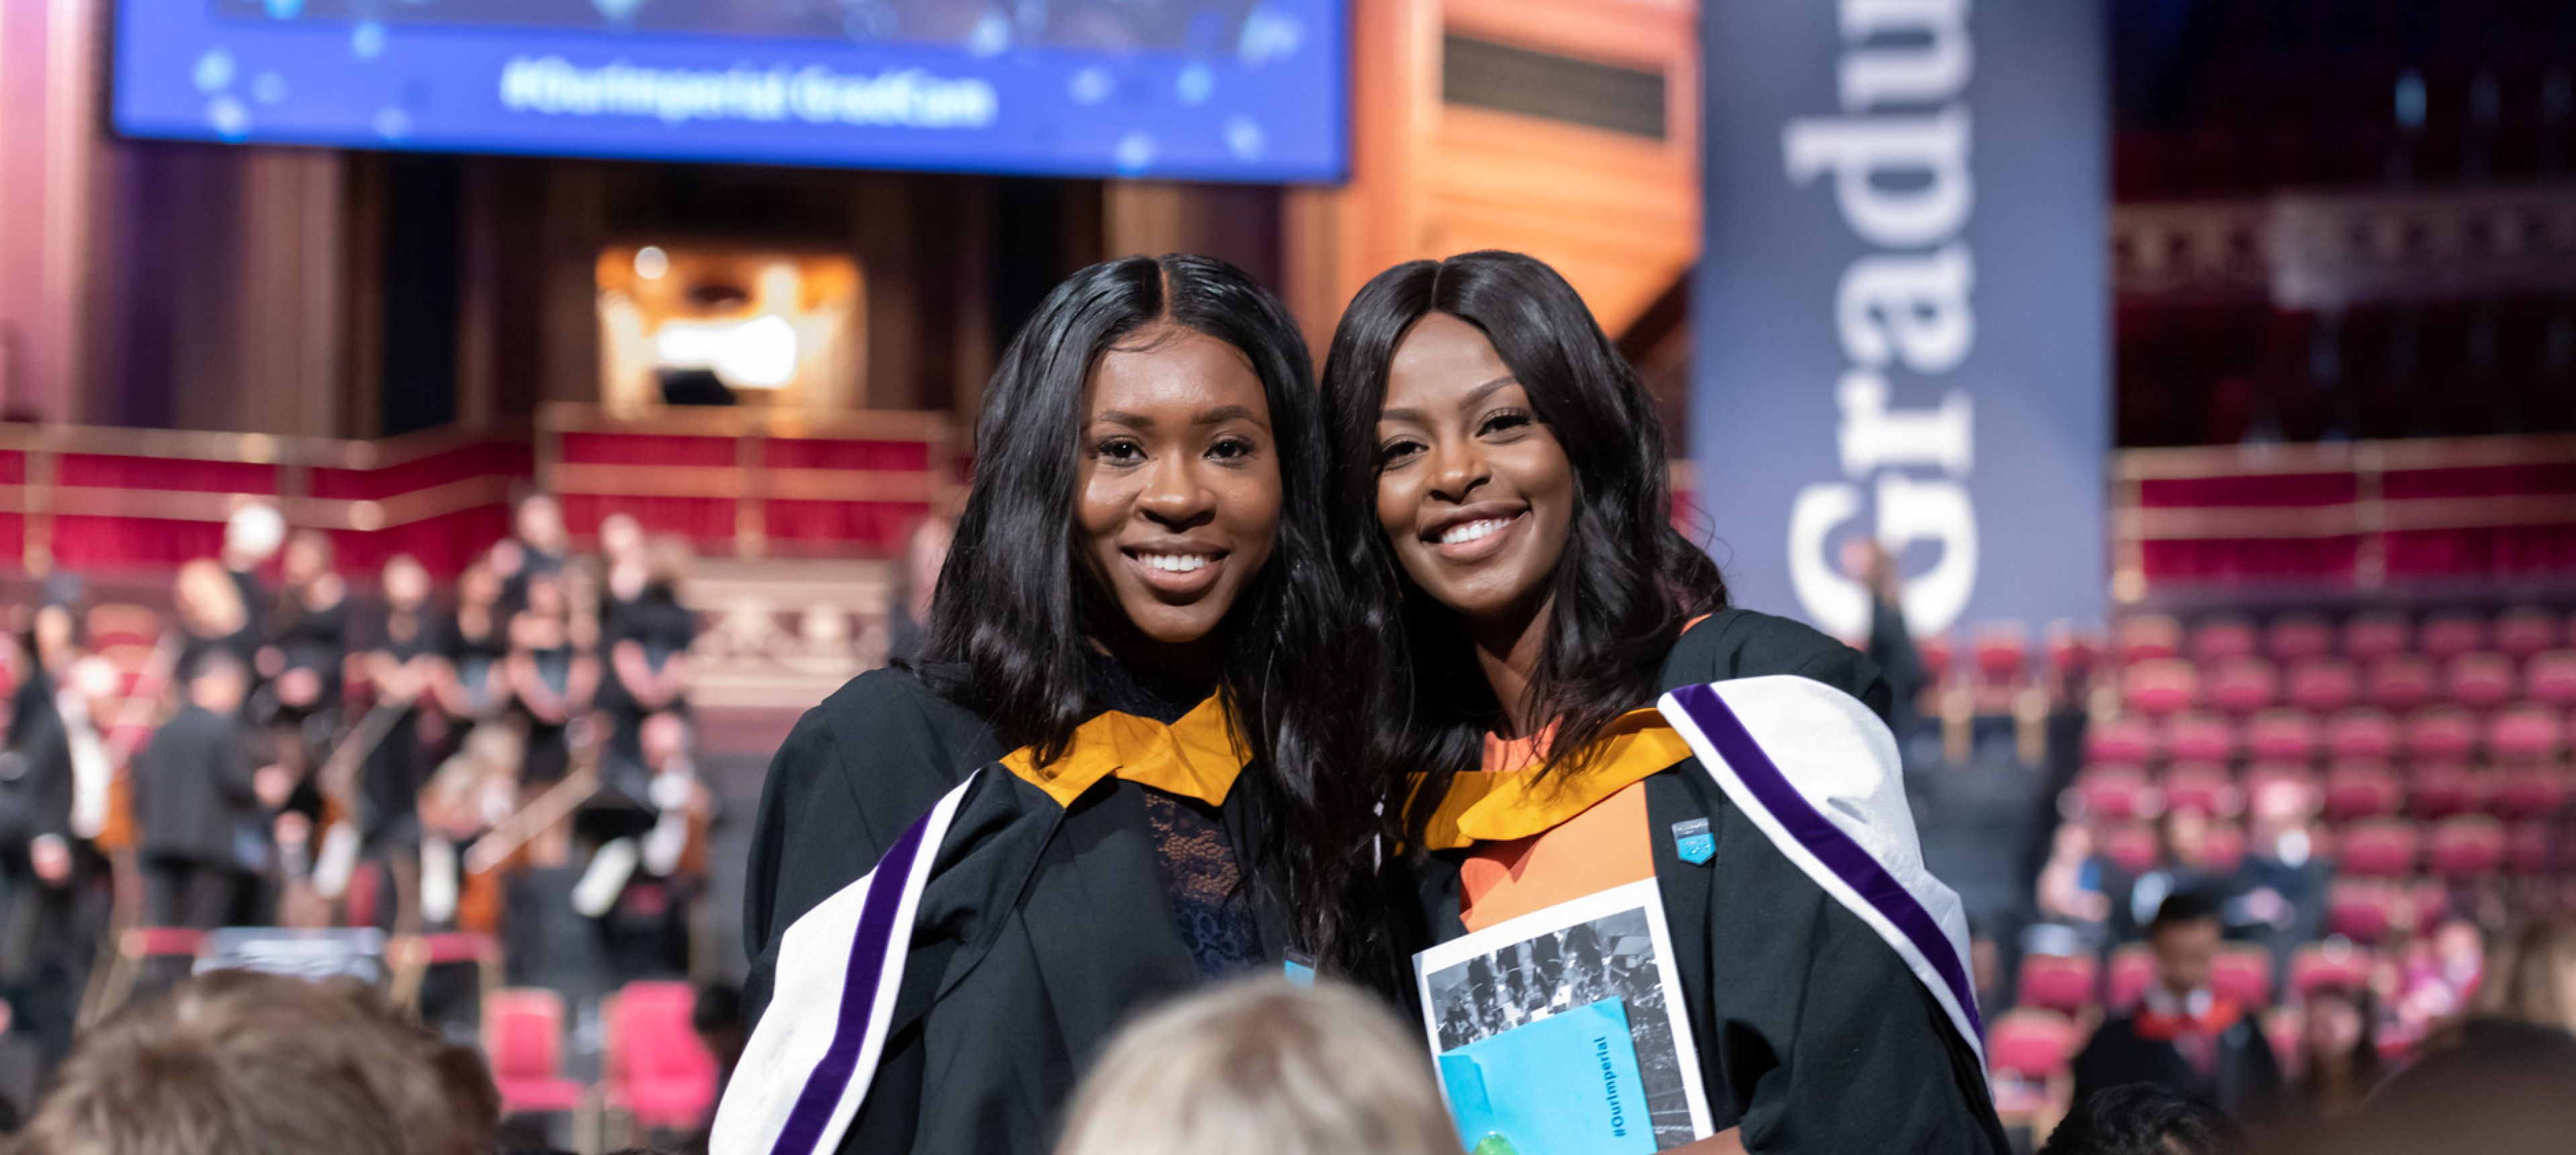 Student graduating at the Royal Albert Hall